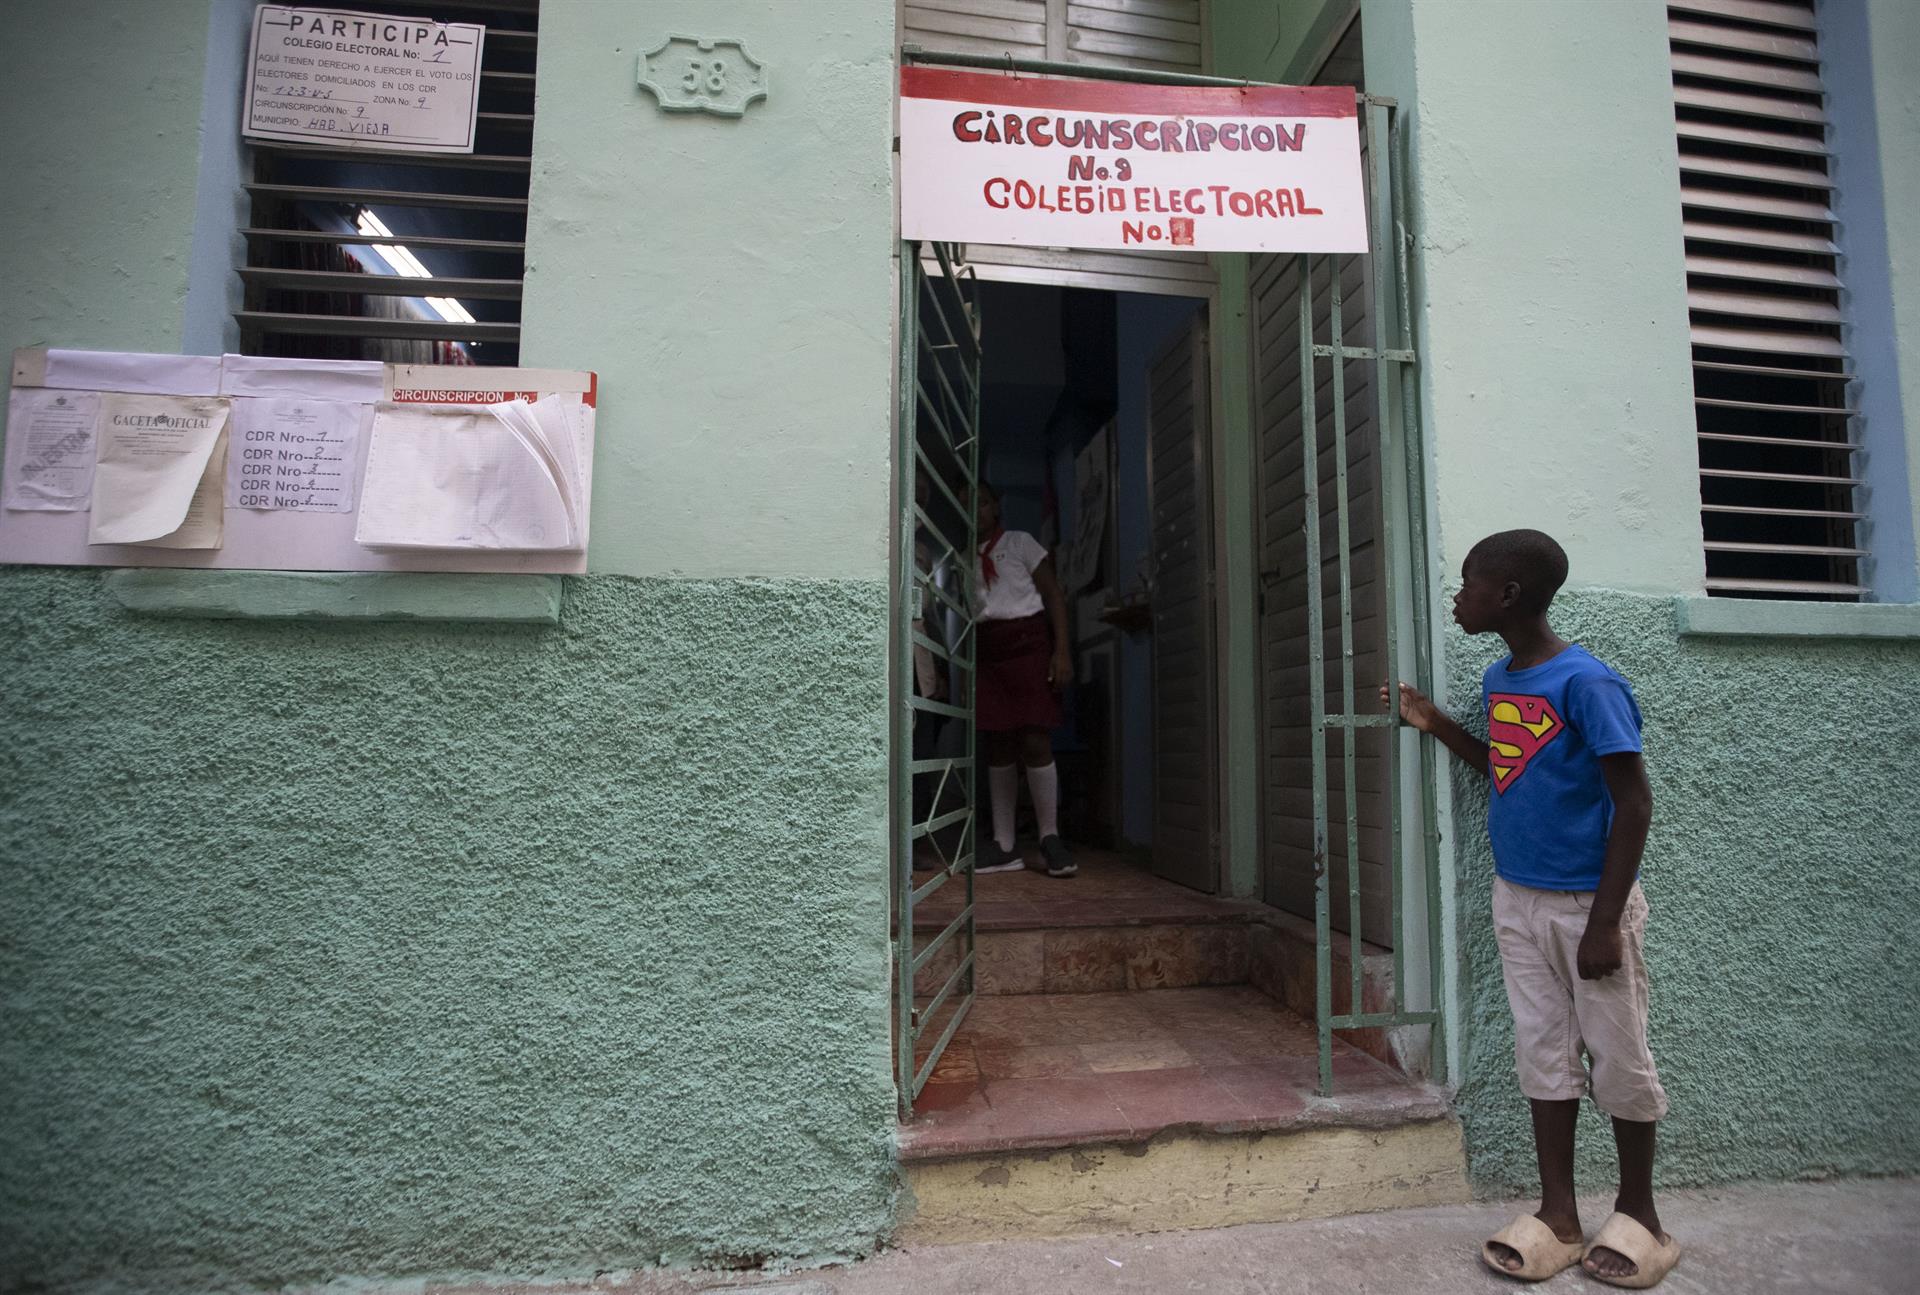 Escasa afluencia y silencio sobre lo votado marcan el referendo en Cuba